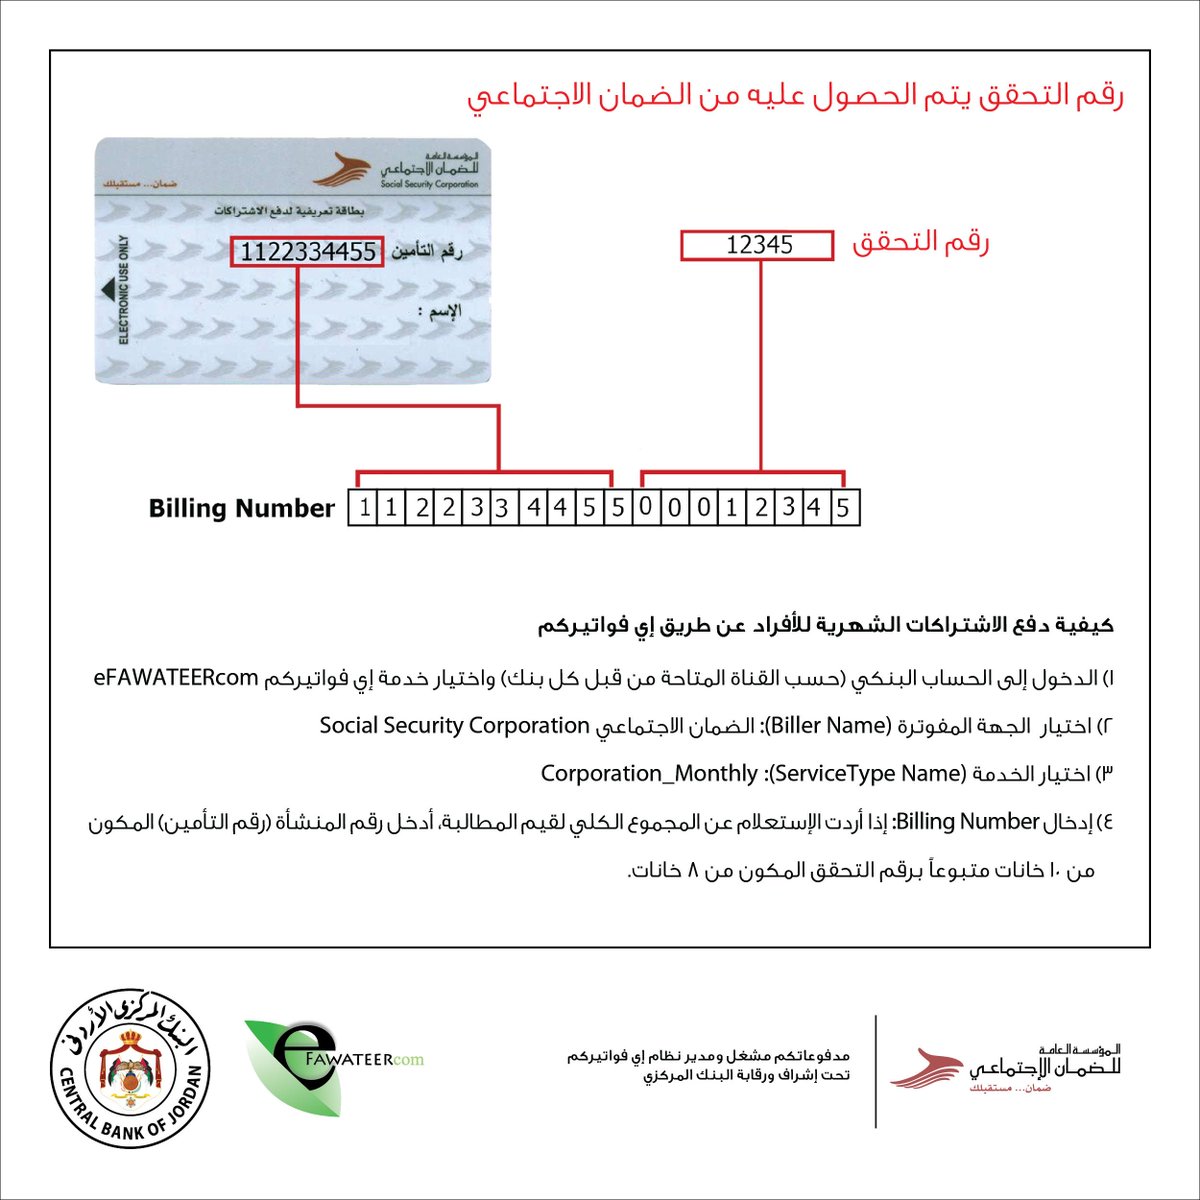 كيفية دفع الاشتراكات الشهرية للأفراد عن طريق أي فواتيركم #الأردن